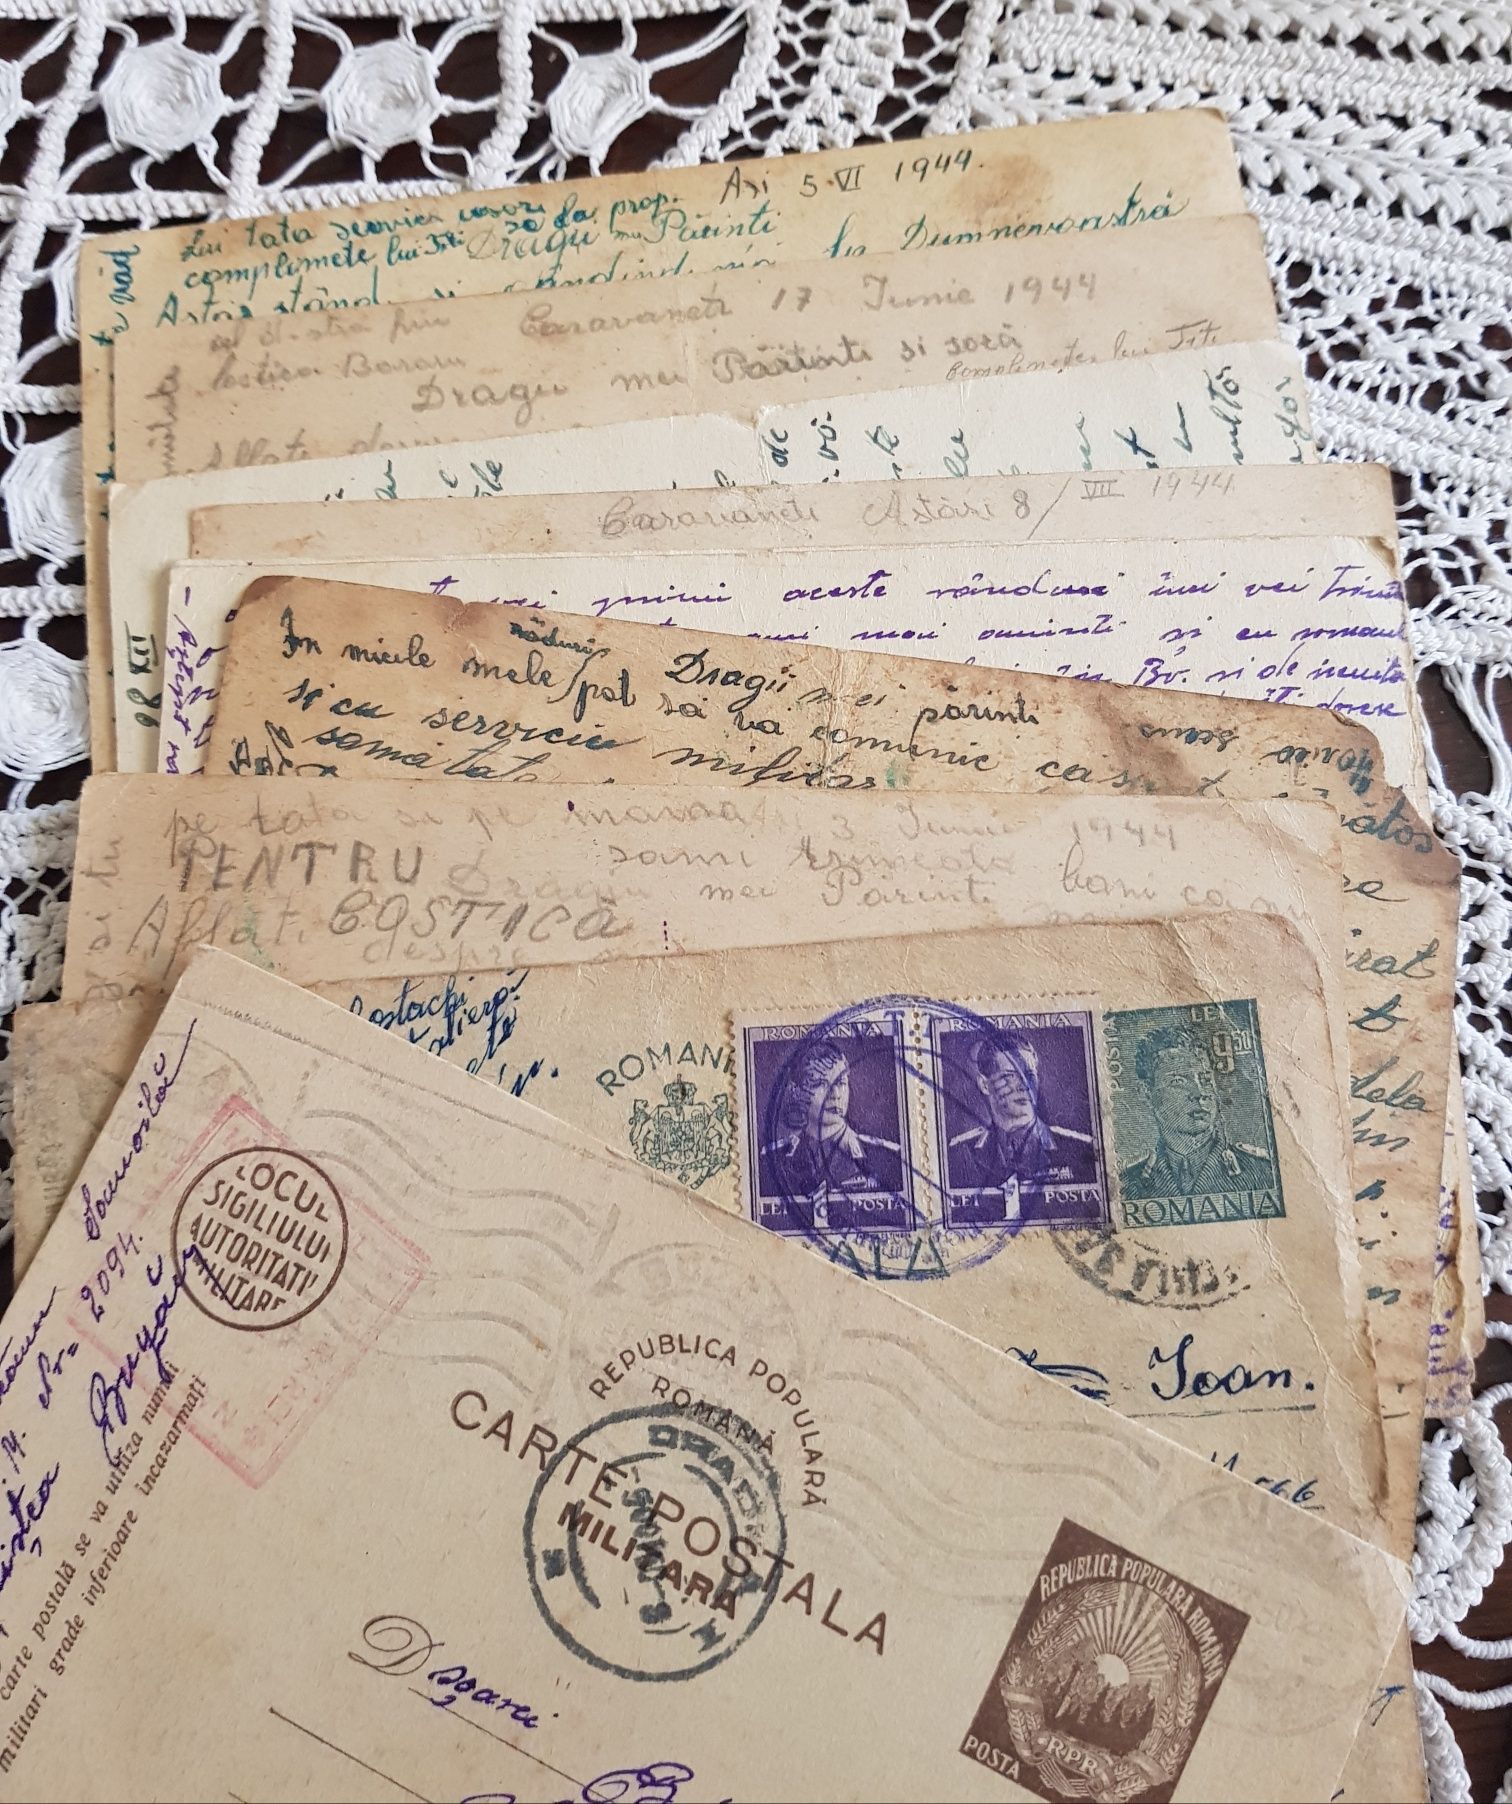 Carti postale militare din anii 40...45.